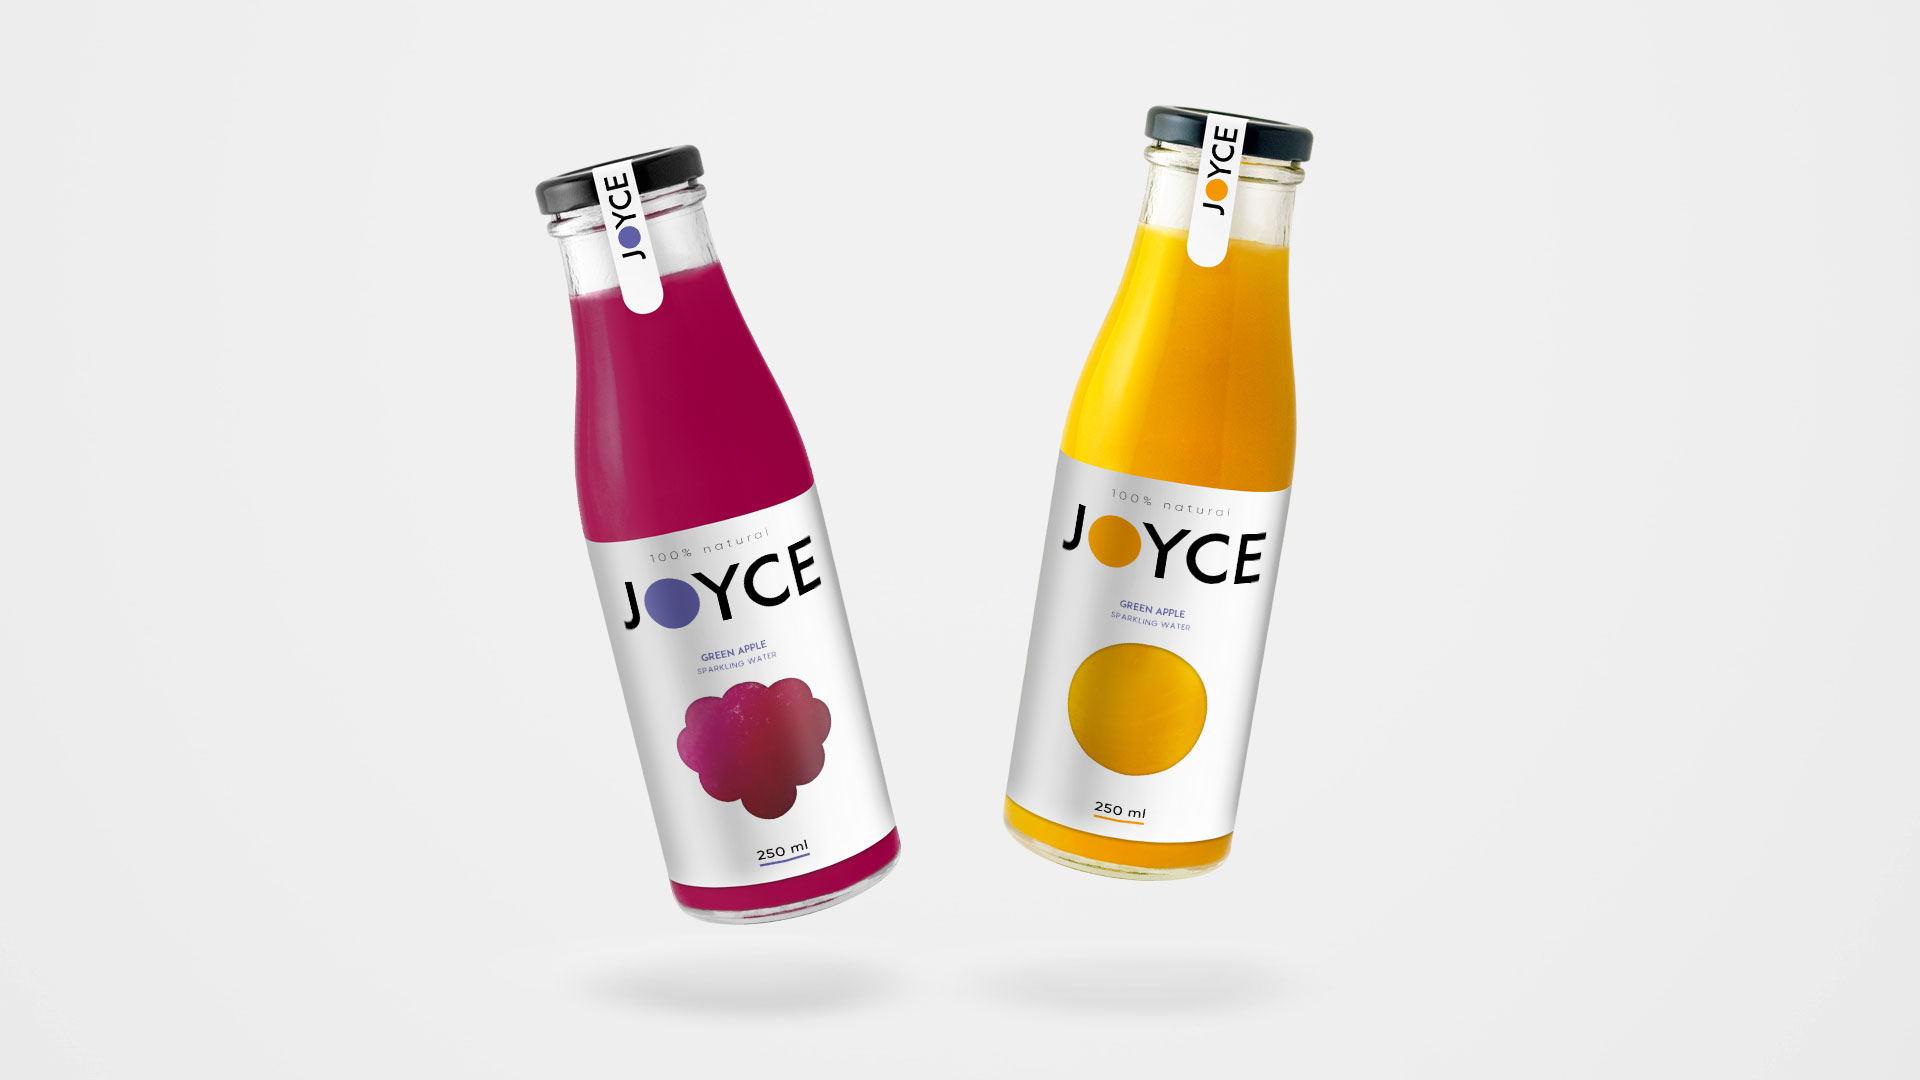 JOYCE果汁包装设计